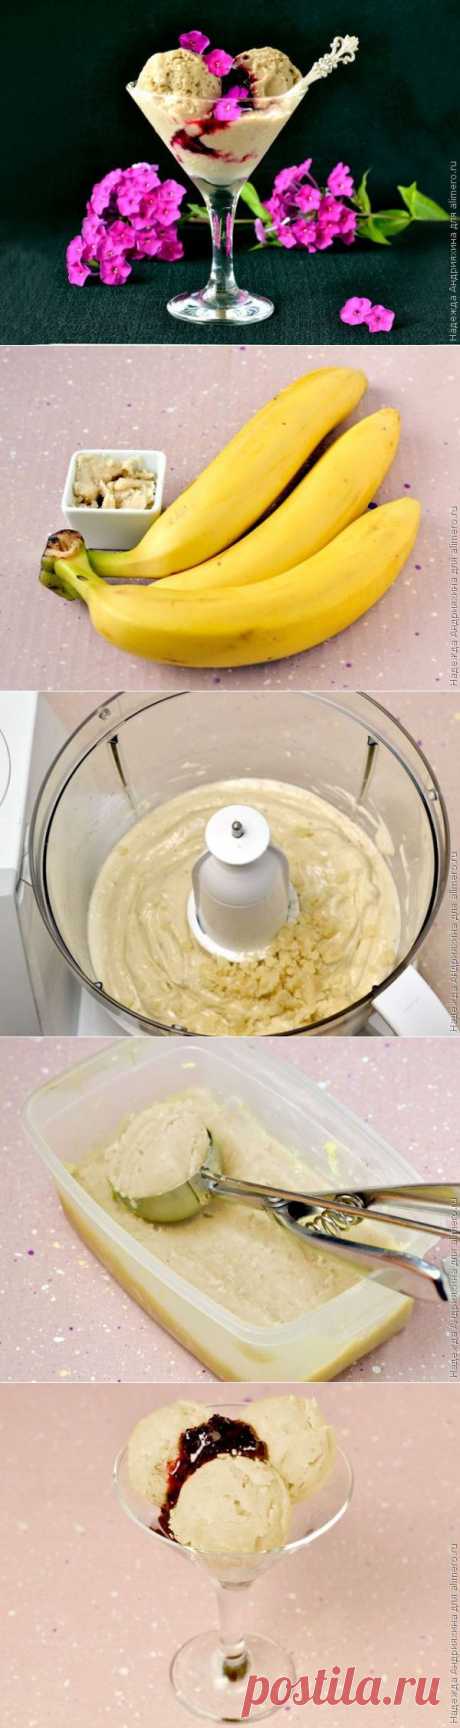 Банановое мороженое / Рецепты с фото